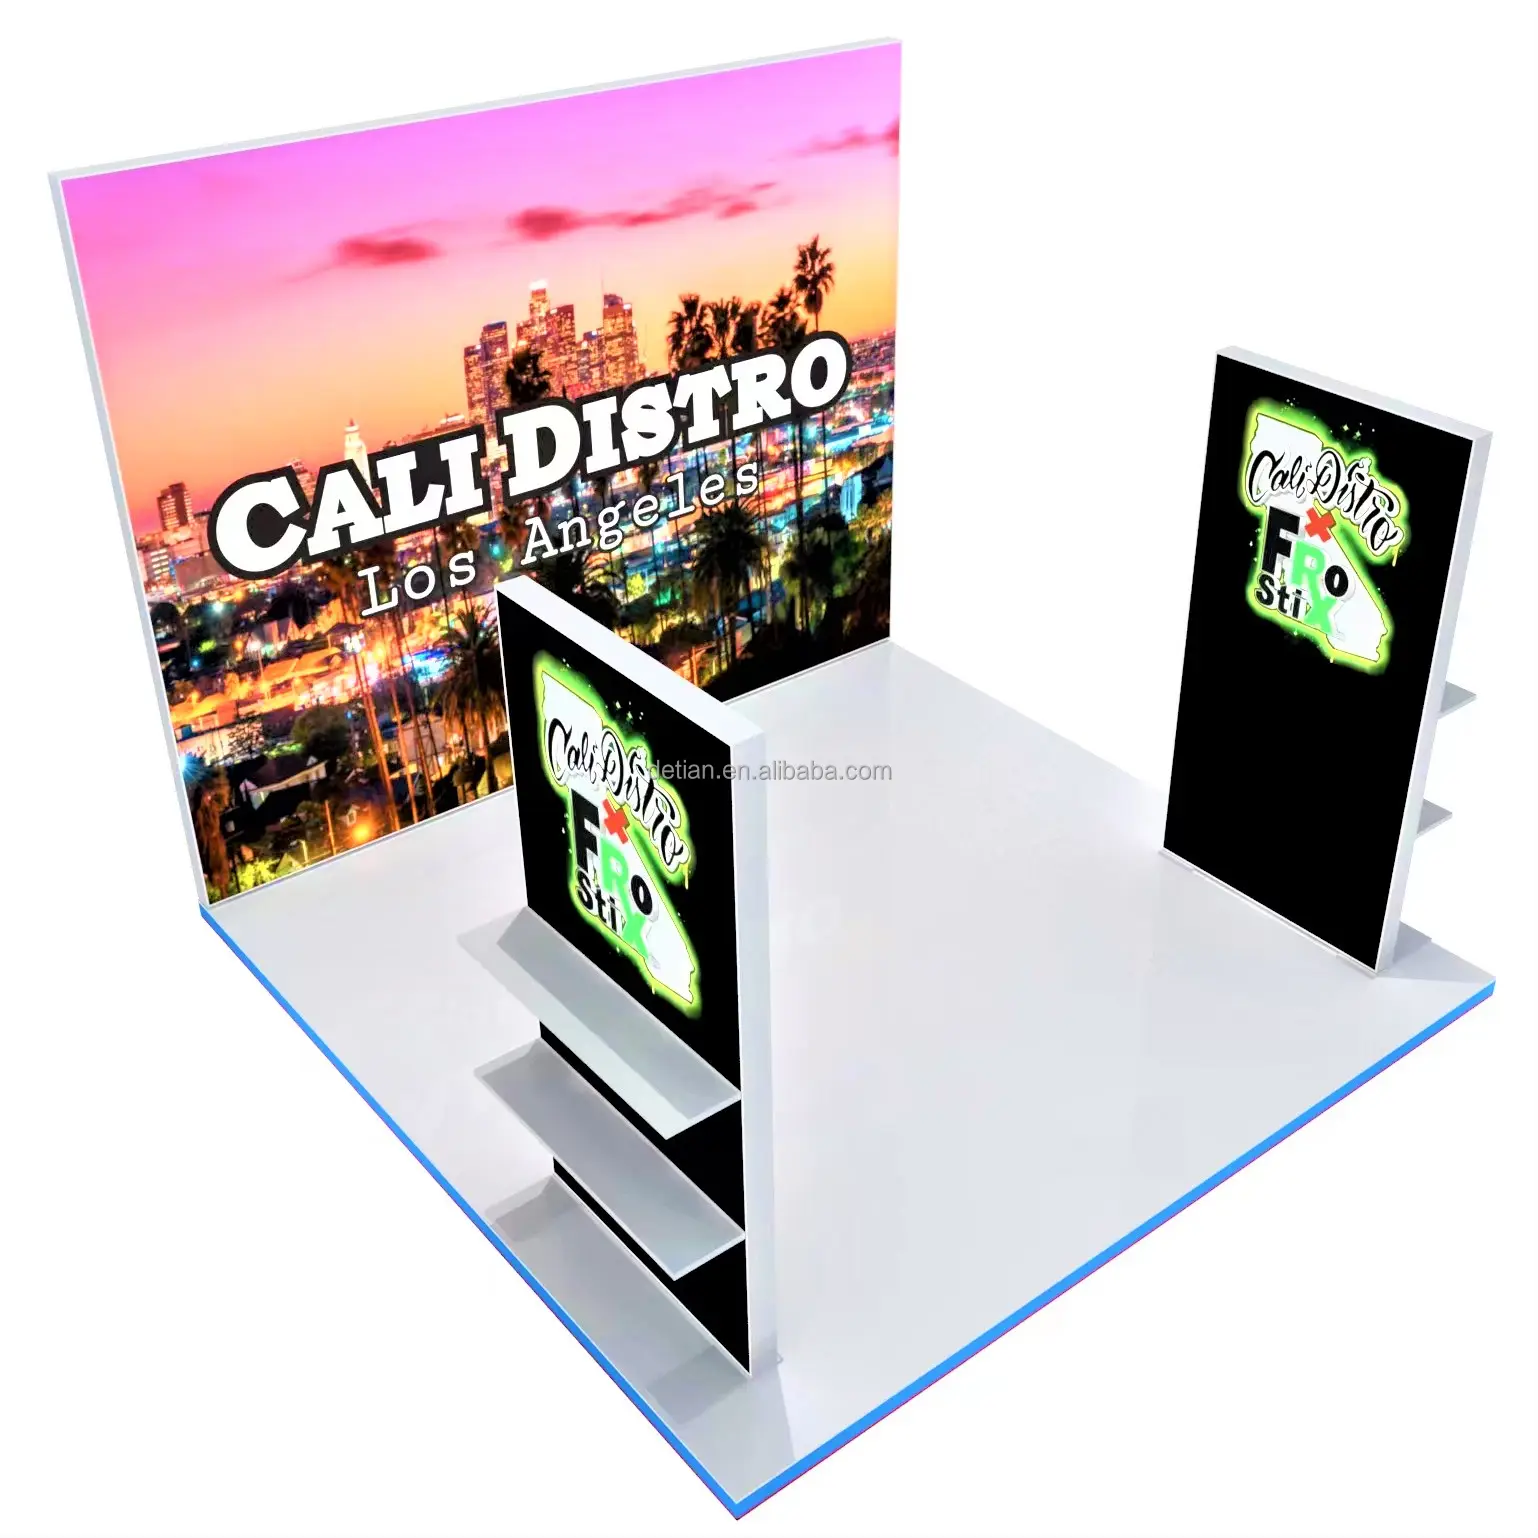 Detian oferta trade show stand display 10x10, portátil exposição cabine trade show estande para expo personalizado